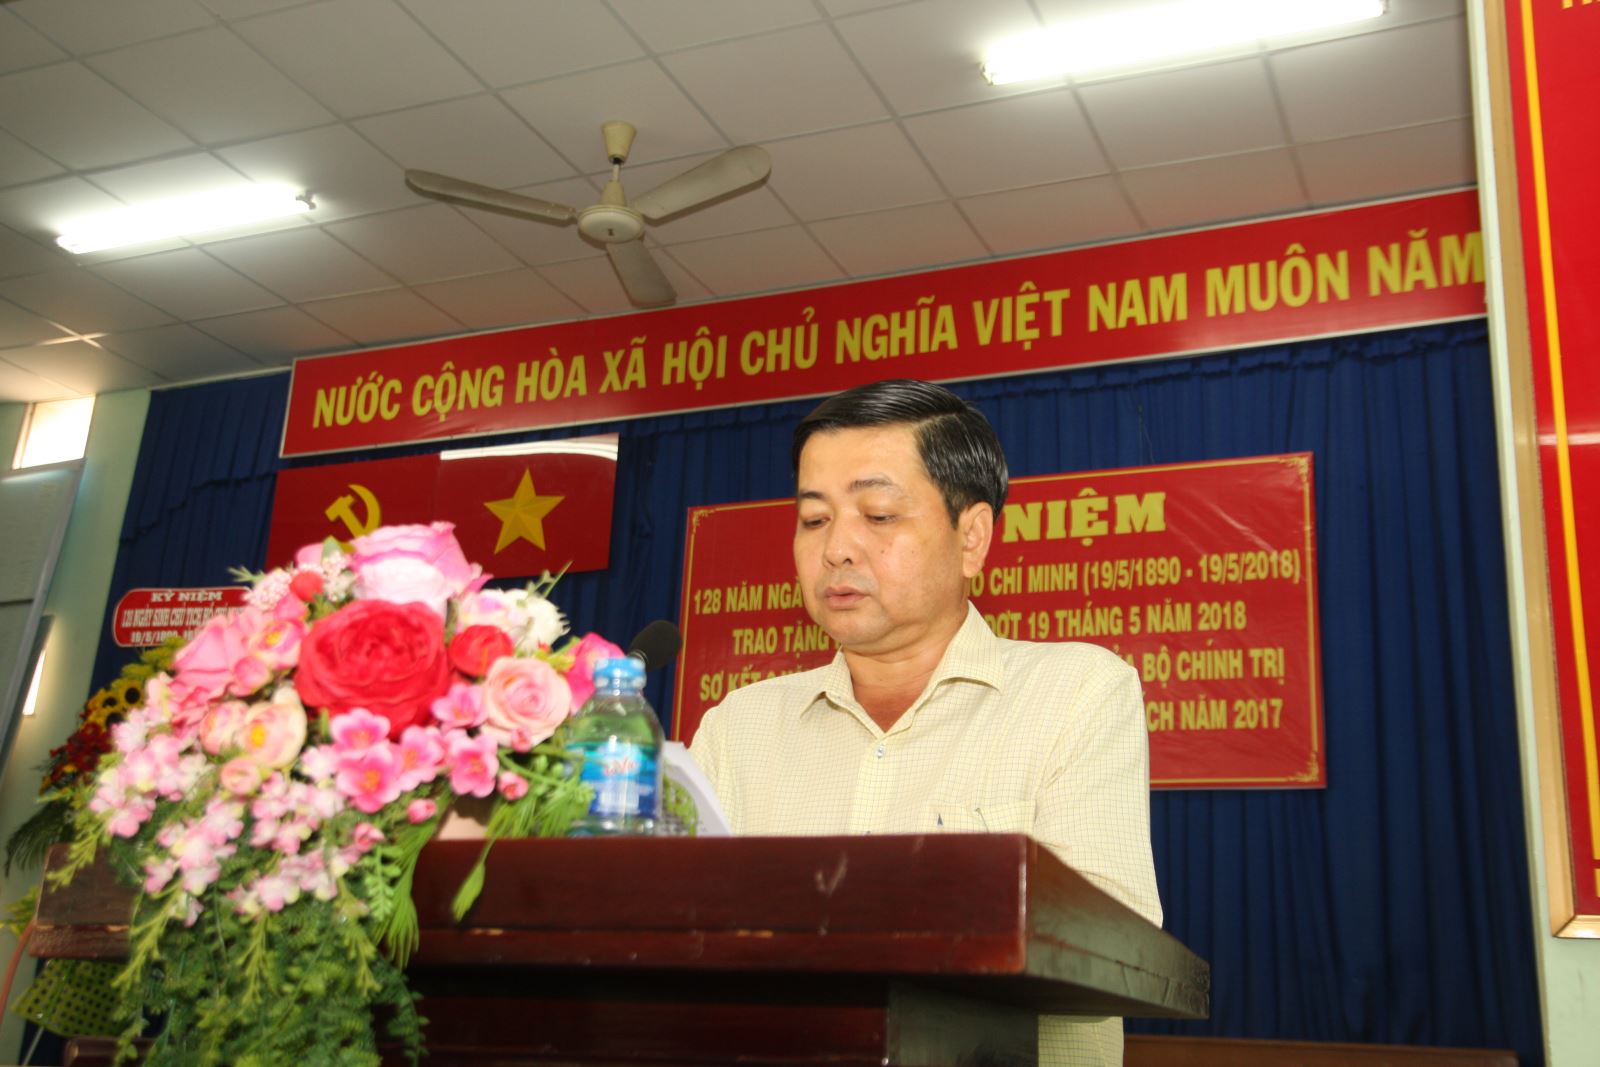 Tổ chức lễ kỷ niệm 128 năm ngày sinh chủ tịch Hồ Chí Minh